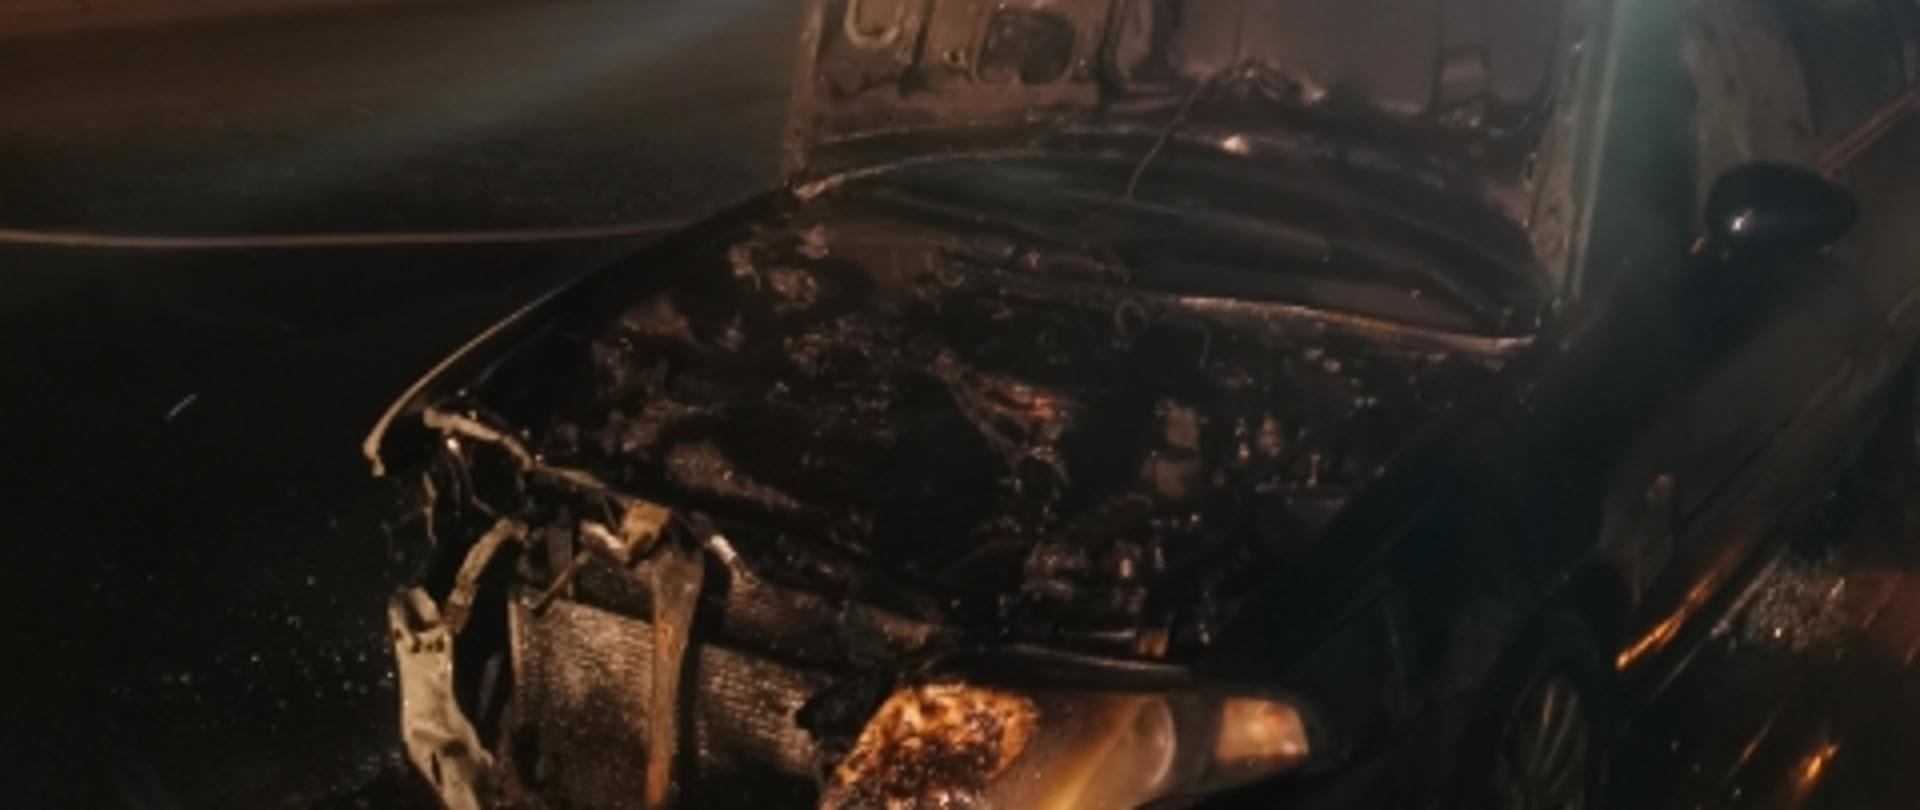 Noc, spalona komora silnika samochodu osobowego, podniesiona maska.